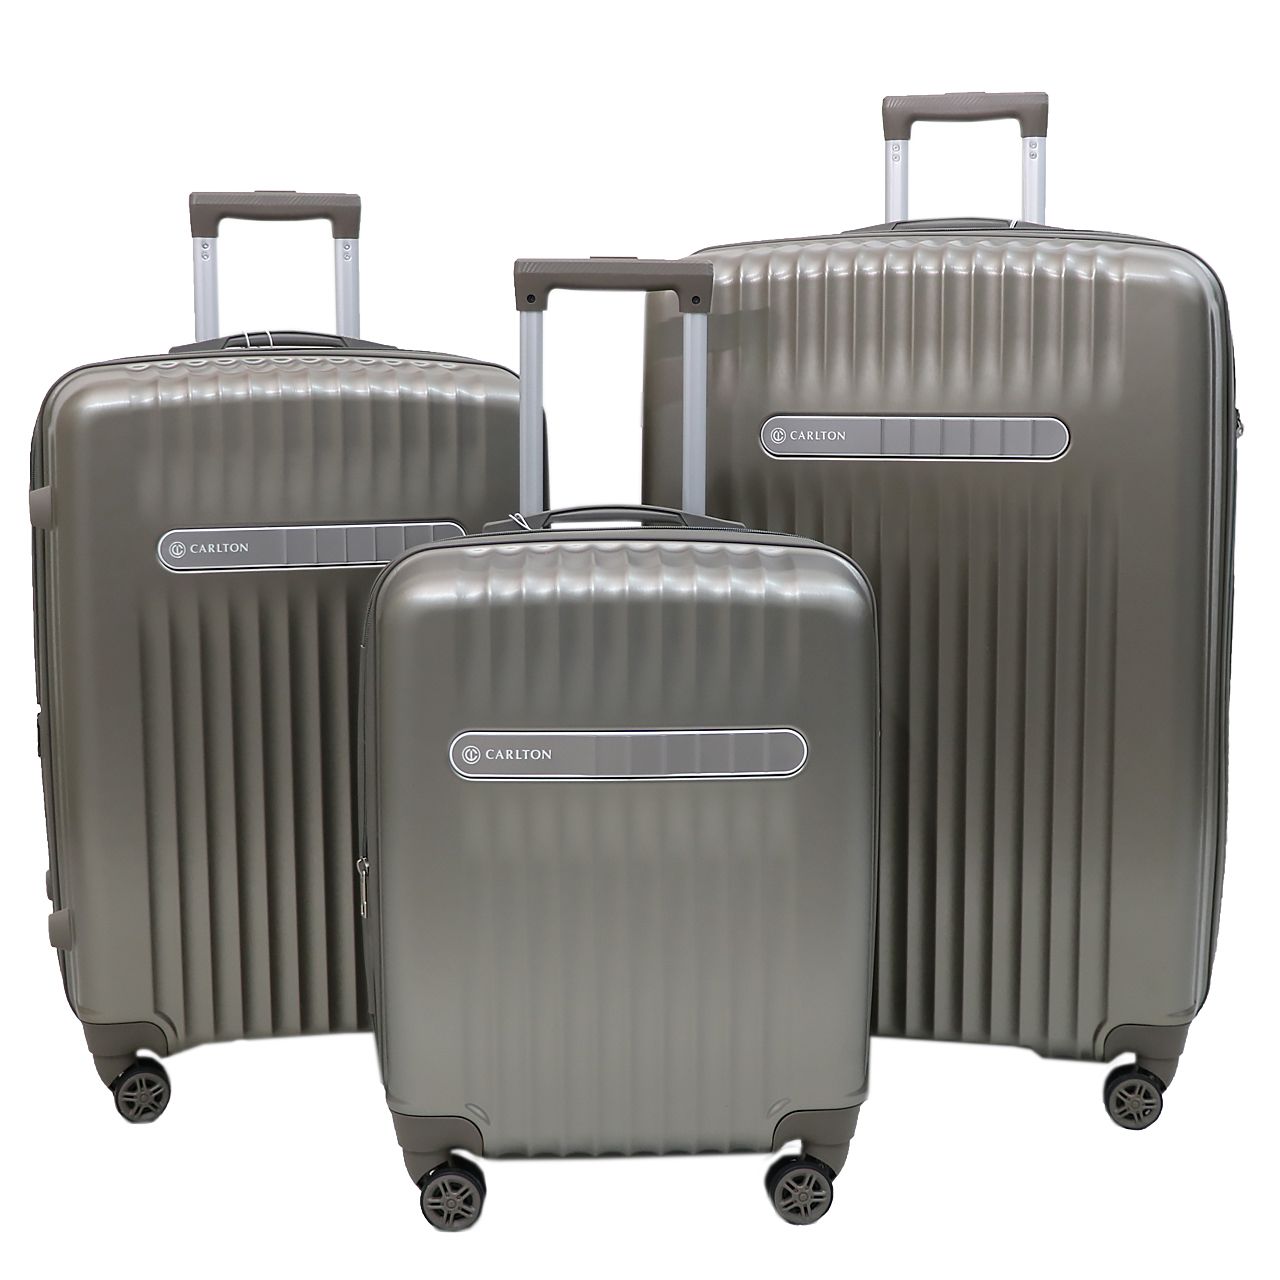 مجموعه سه عددی چمدان کارلتون مدل MERIDIAN مردیان -  - 1